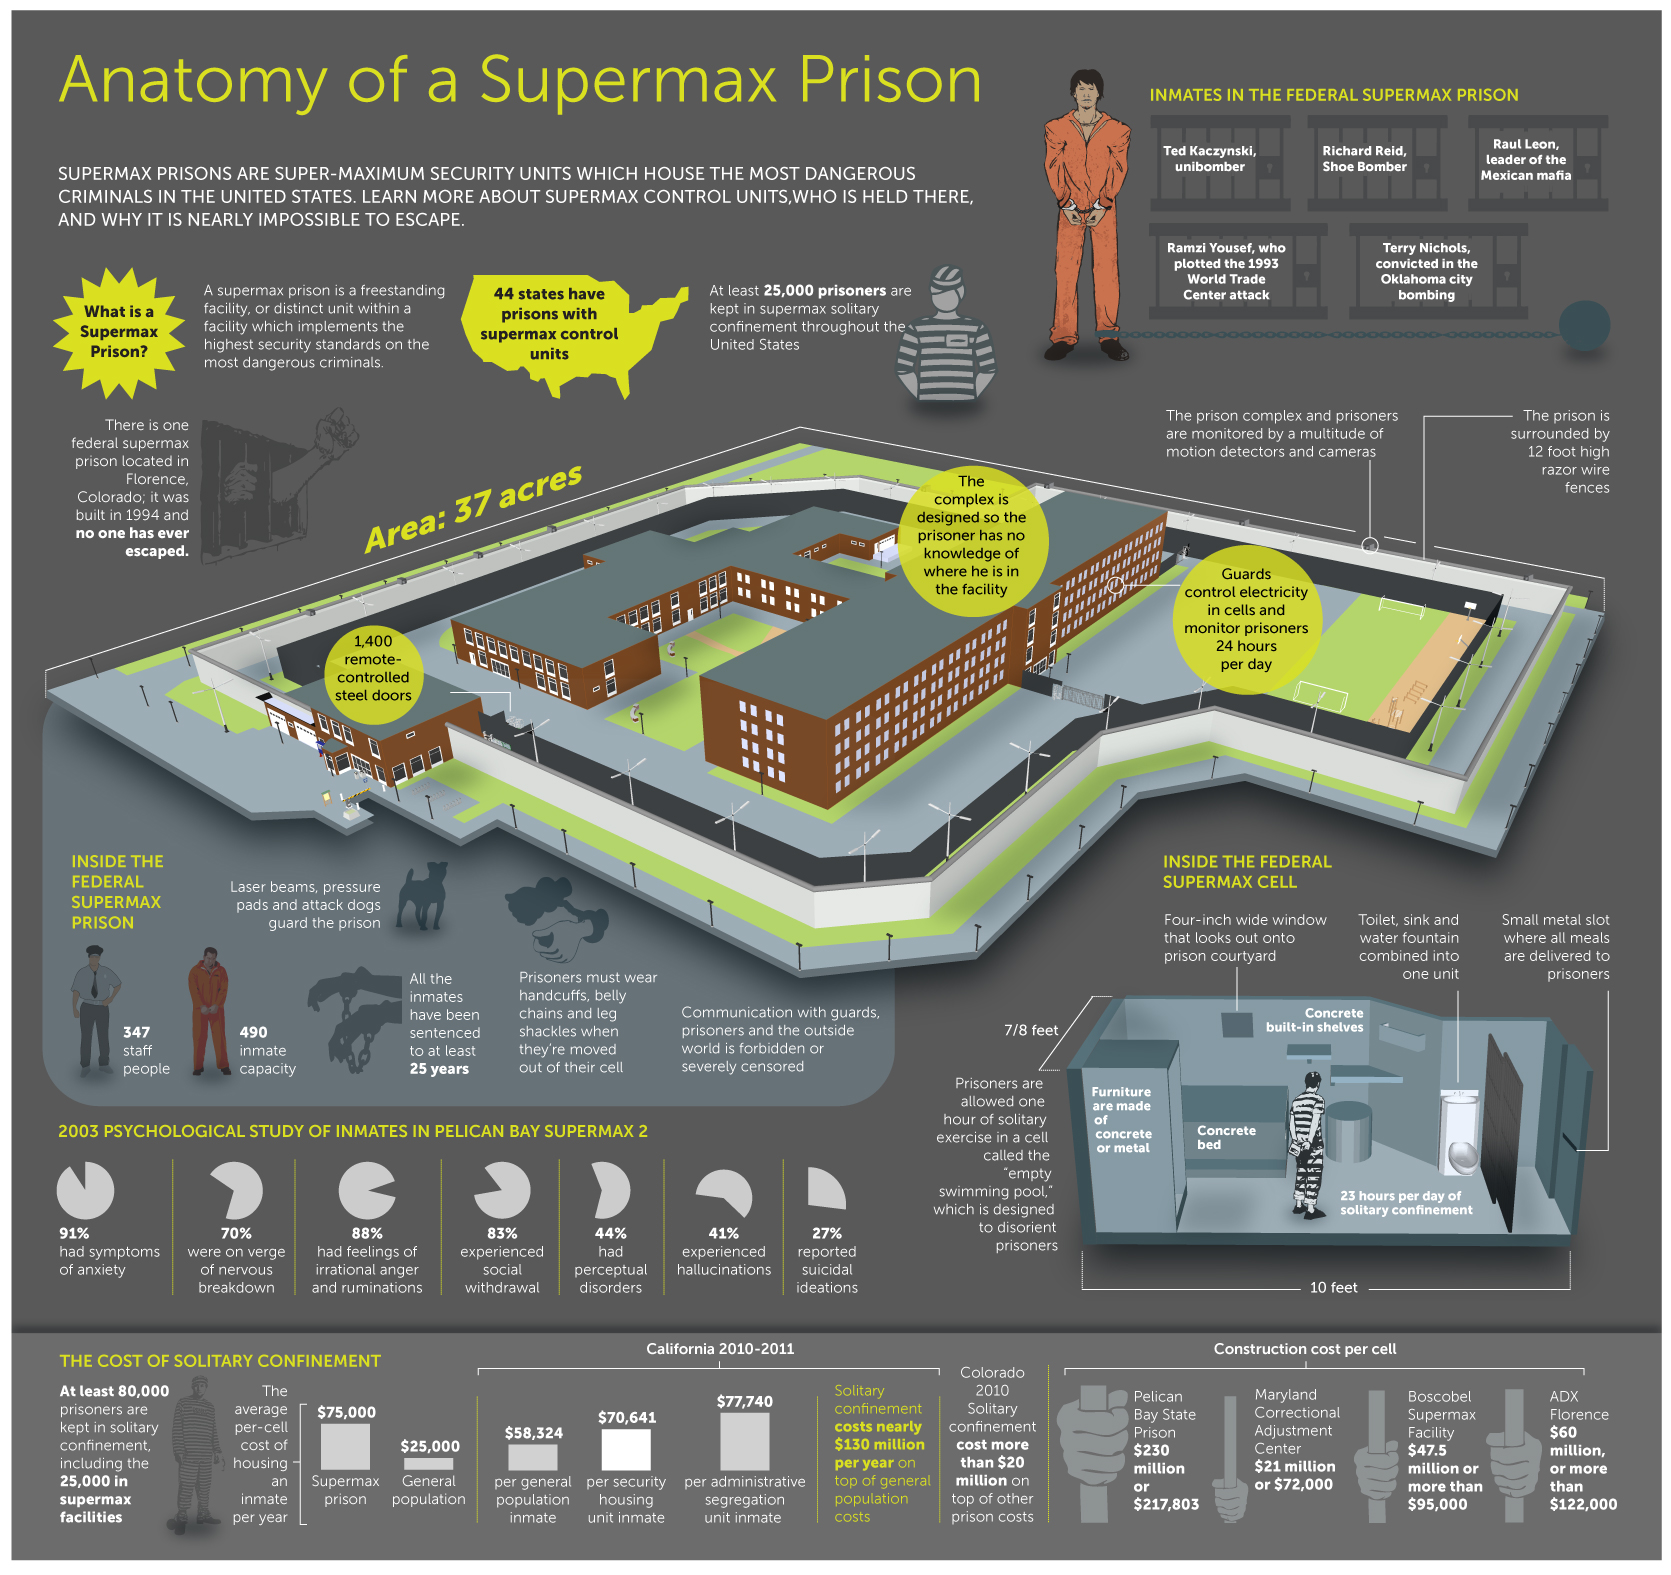 Should Architects Boycott Building ‘Supermax’ Prisons?